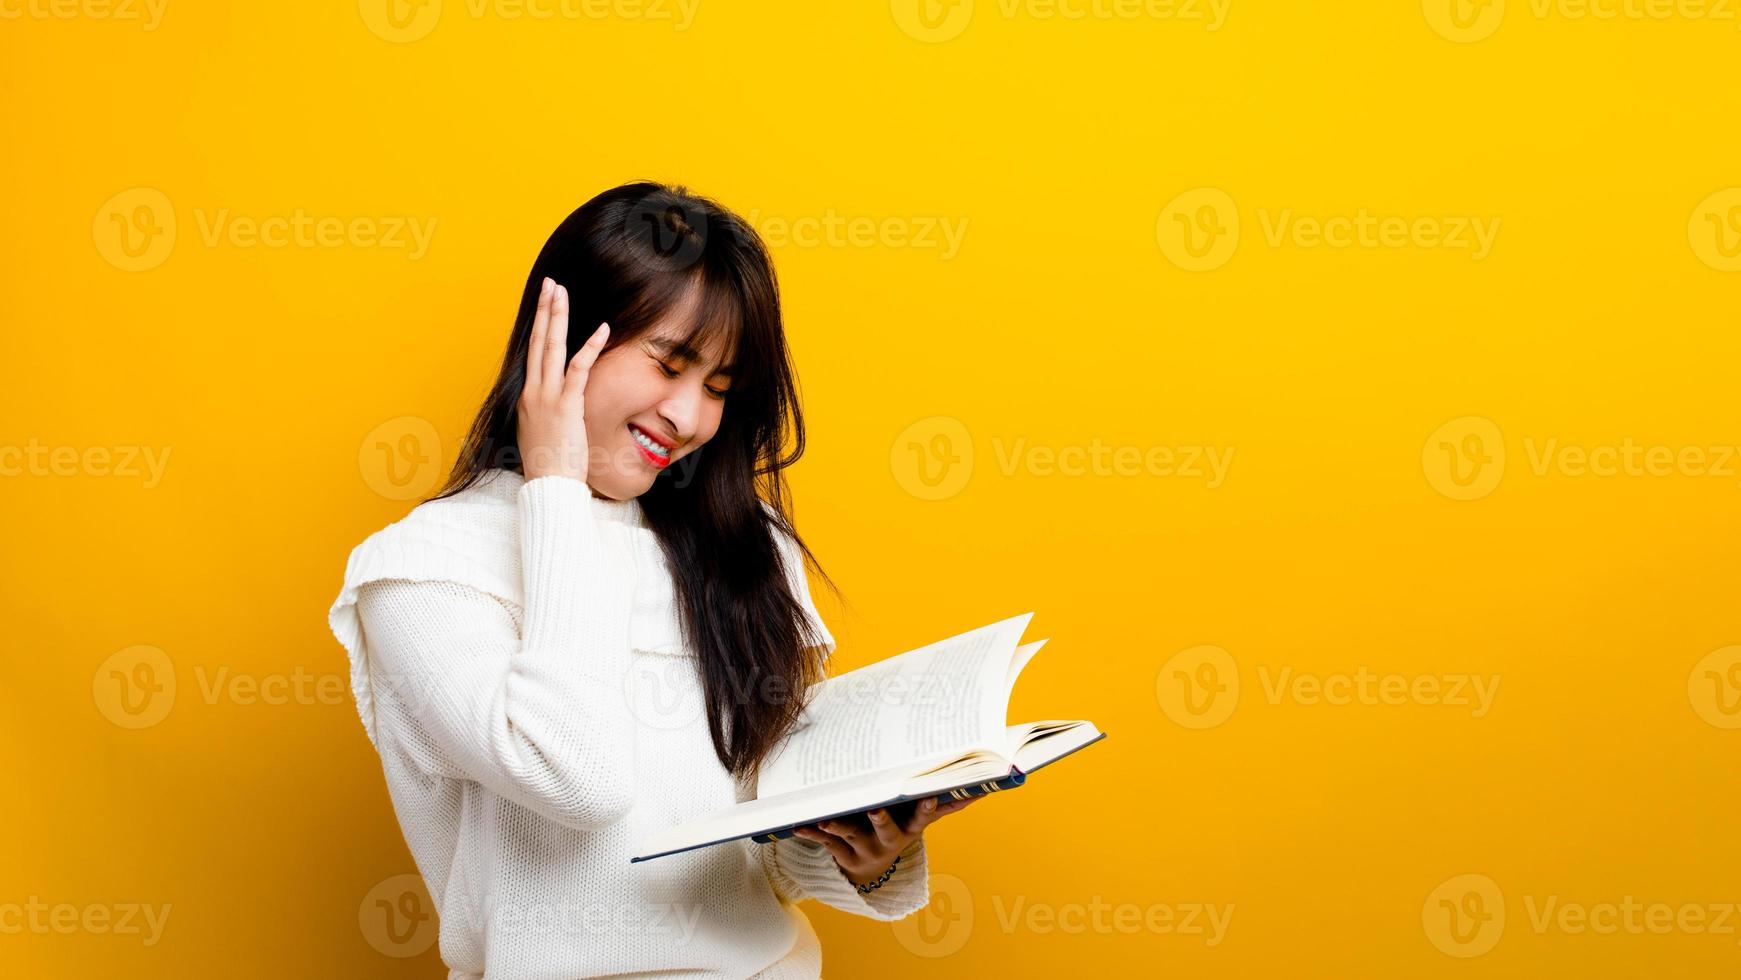 foto di una ragazza asiatica sorridente mentre legge un libro mentre sorride su uno sfondo giallo concetto di lettura del libro una bambina che ama leggere libri